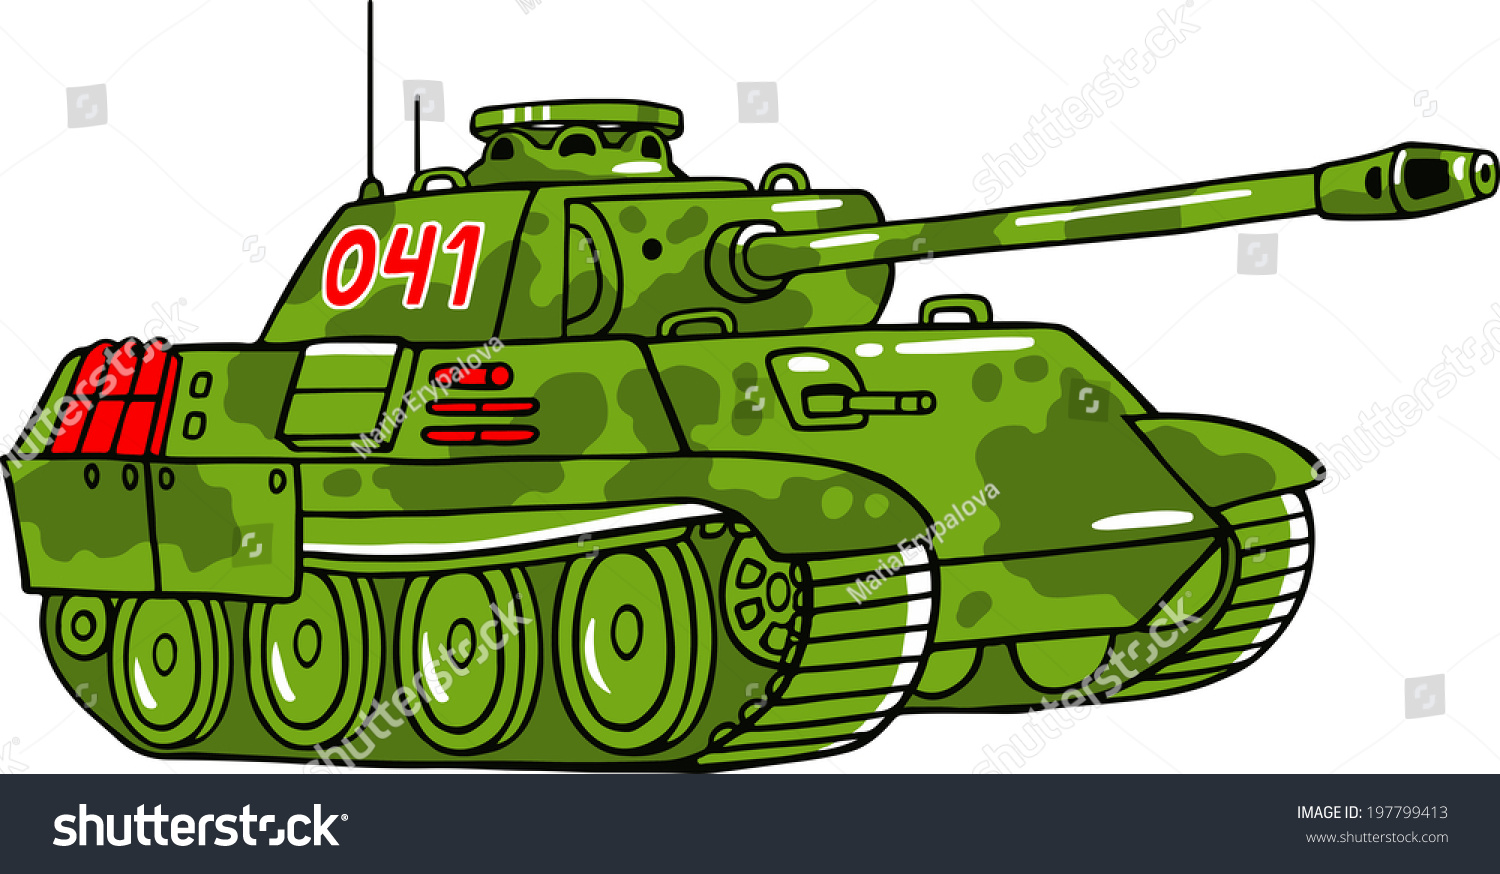 как нарисовать военный танк из гта 5 фото 99